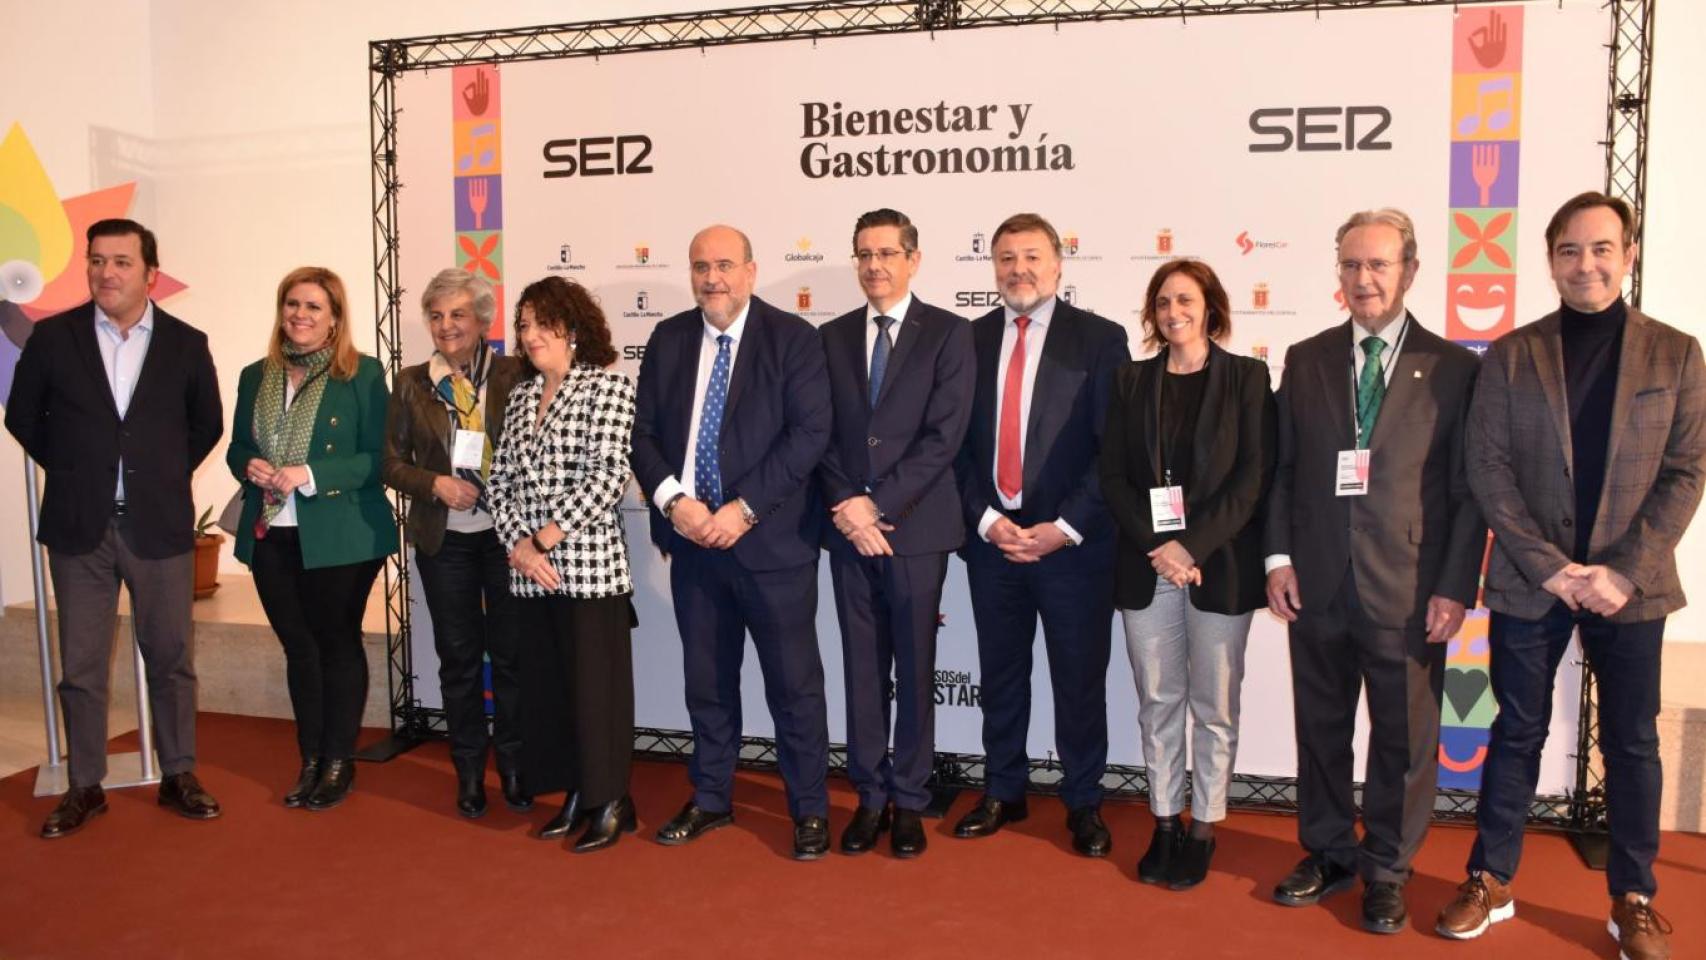 Inauguración del Congreso Bienestar y Gastronomía que este fin de semana se celebra en la ciudad de Cuenca